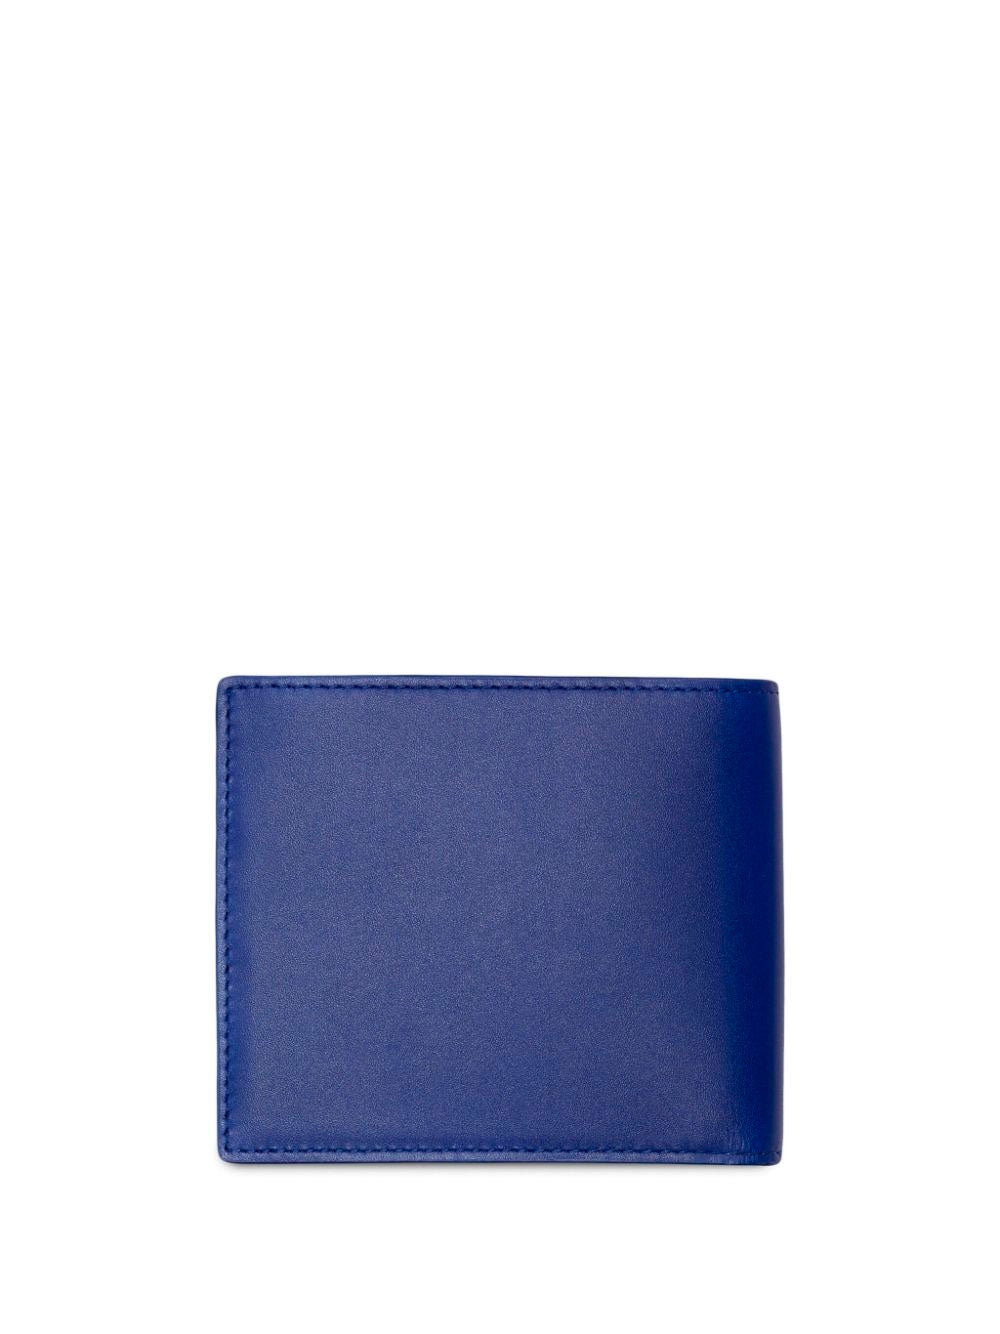 EKD leather wallet